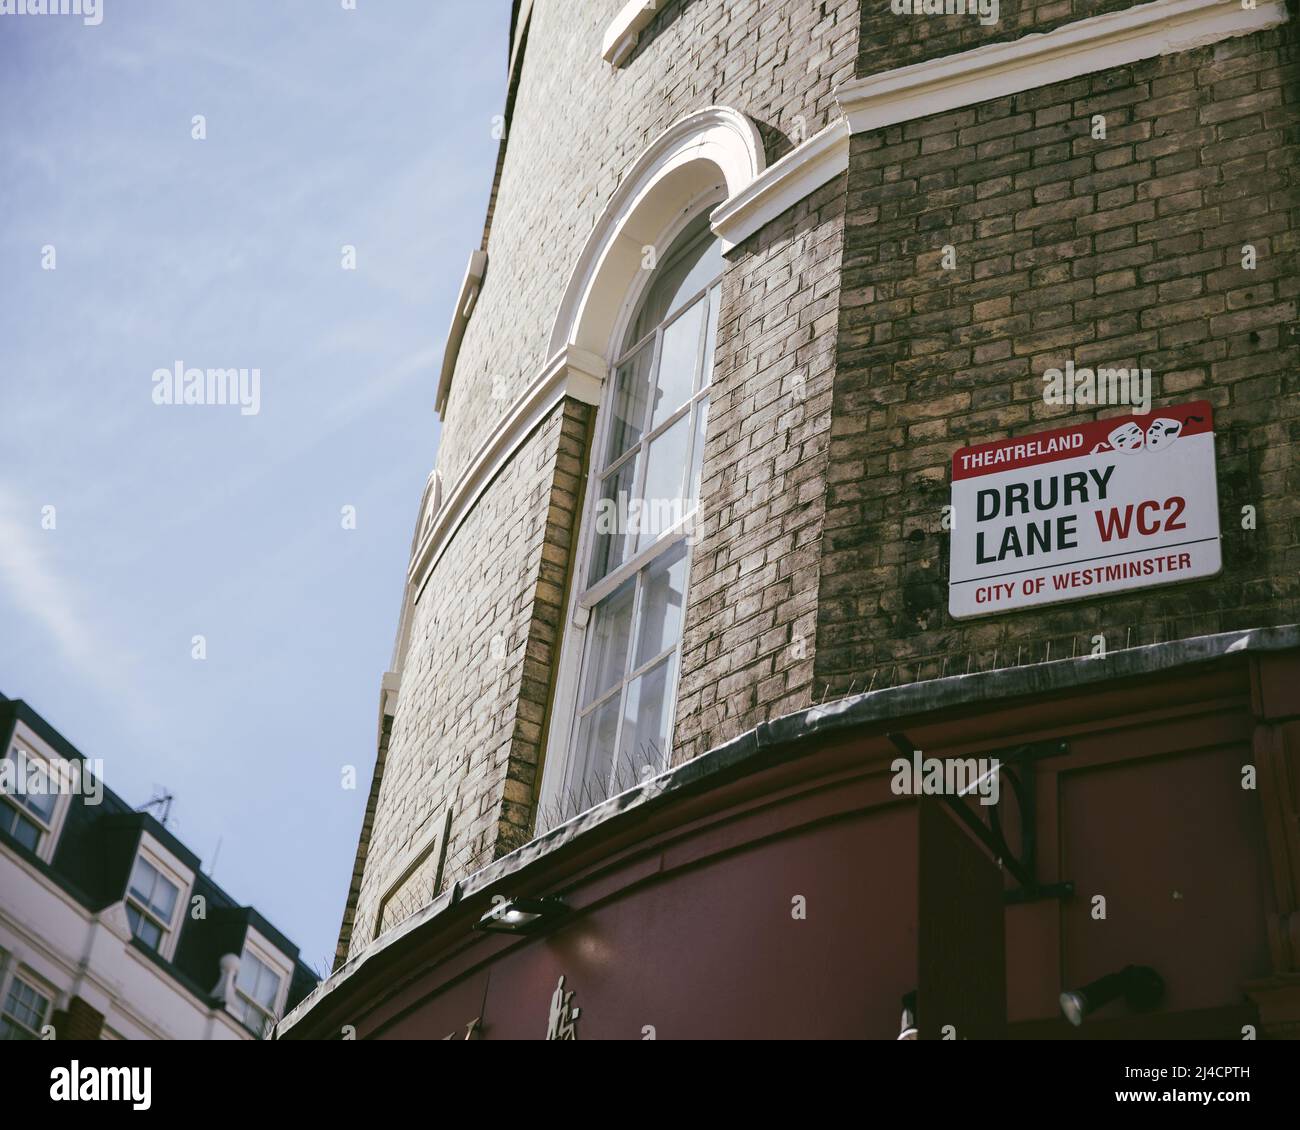 Gran Londres, Londres, Reino Unido - 12 de abril de 2016: Un edificio del este de Londres, contra un cielo azul claro, muestra la señal de la calle Drury Lane. Foto de stock